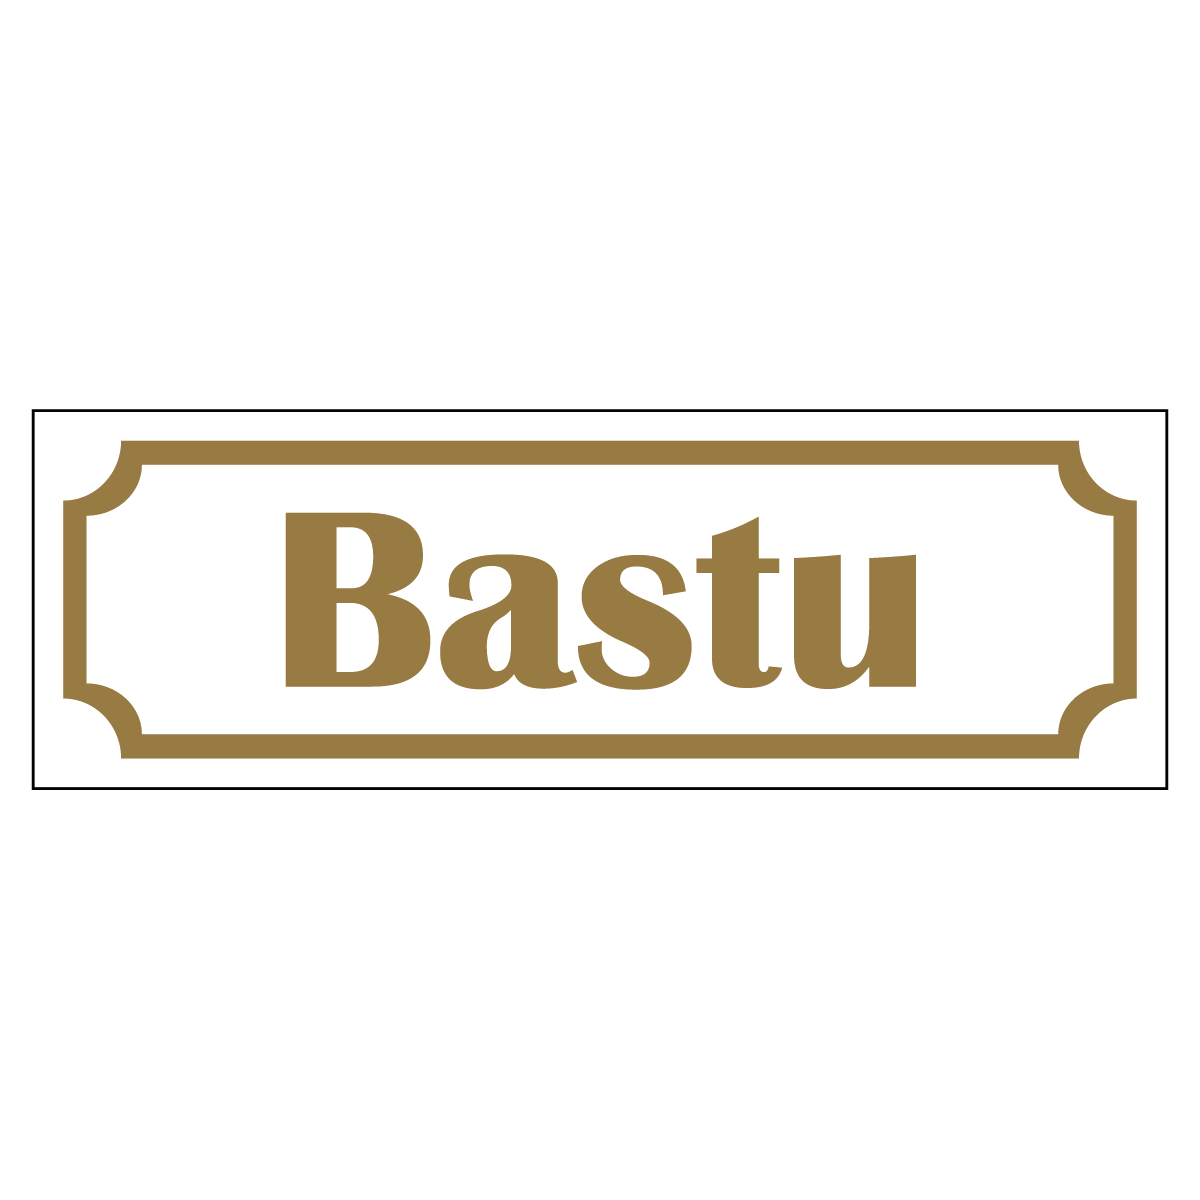 Bastu - Skylt - 150x50mm - Vit - Guld